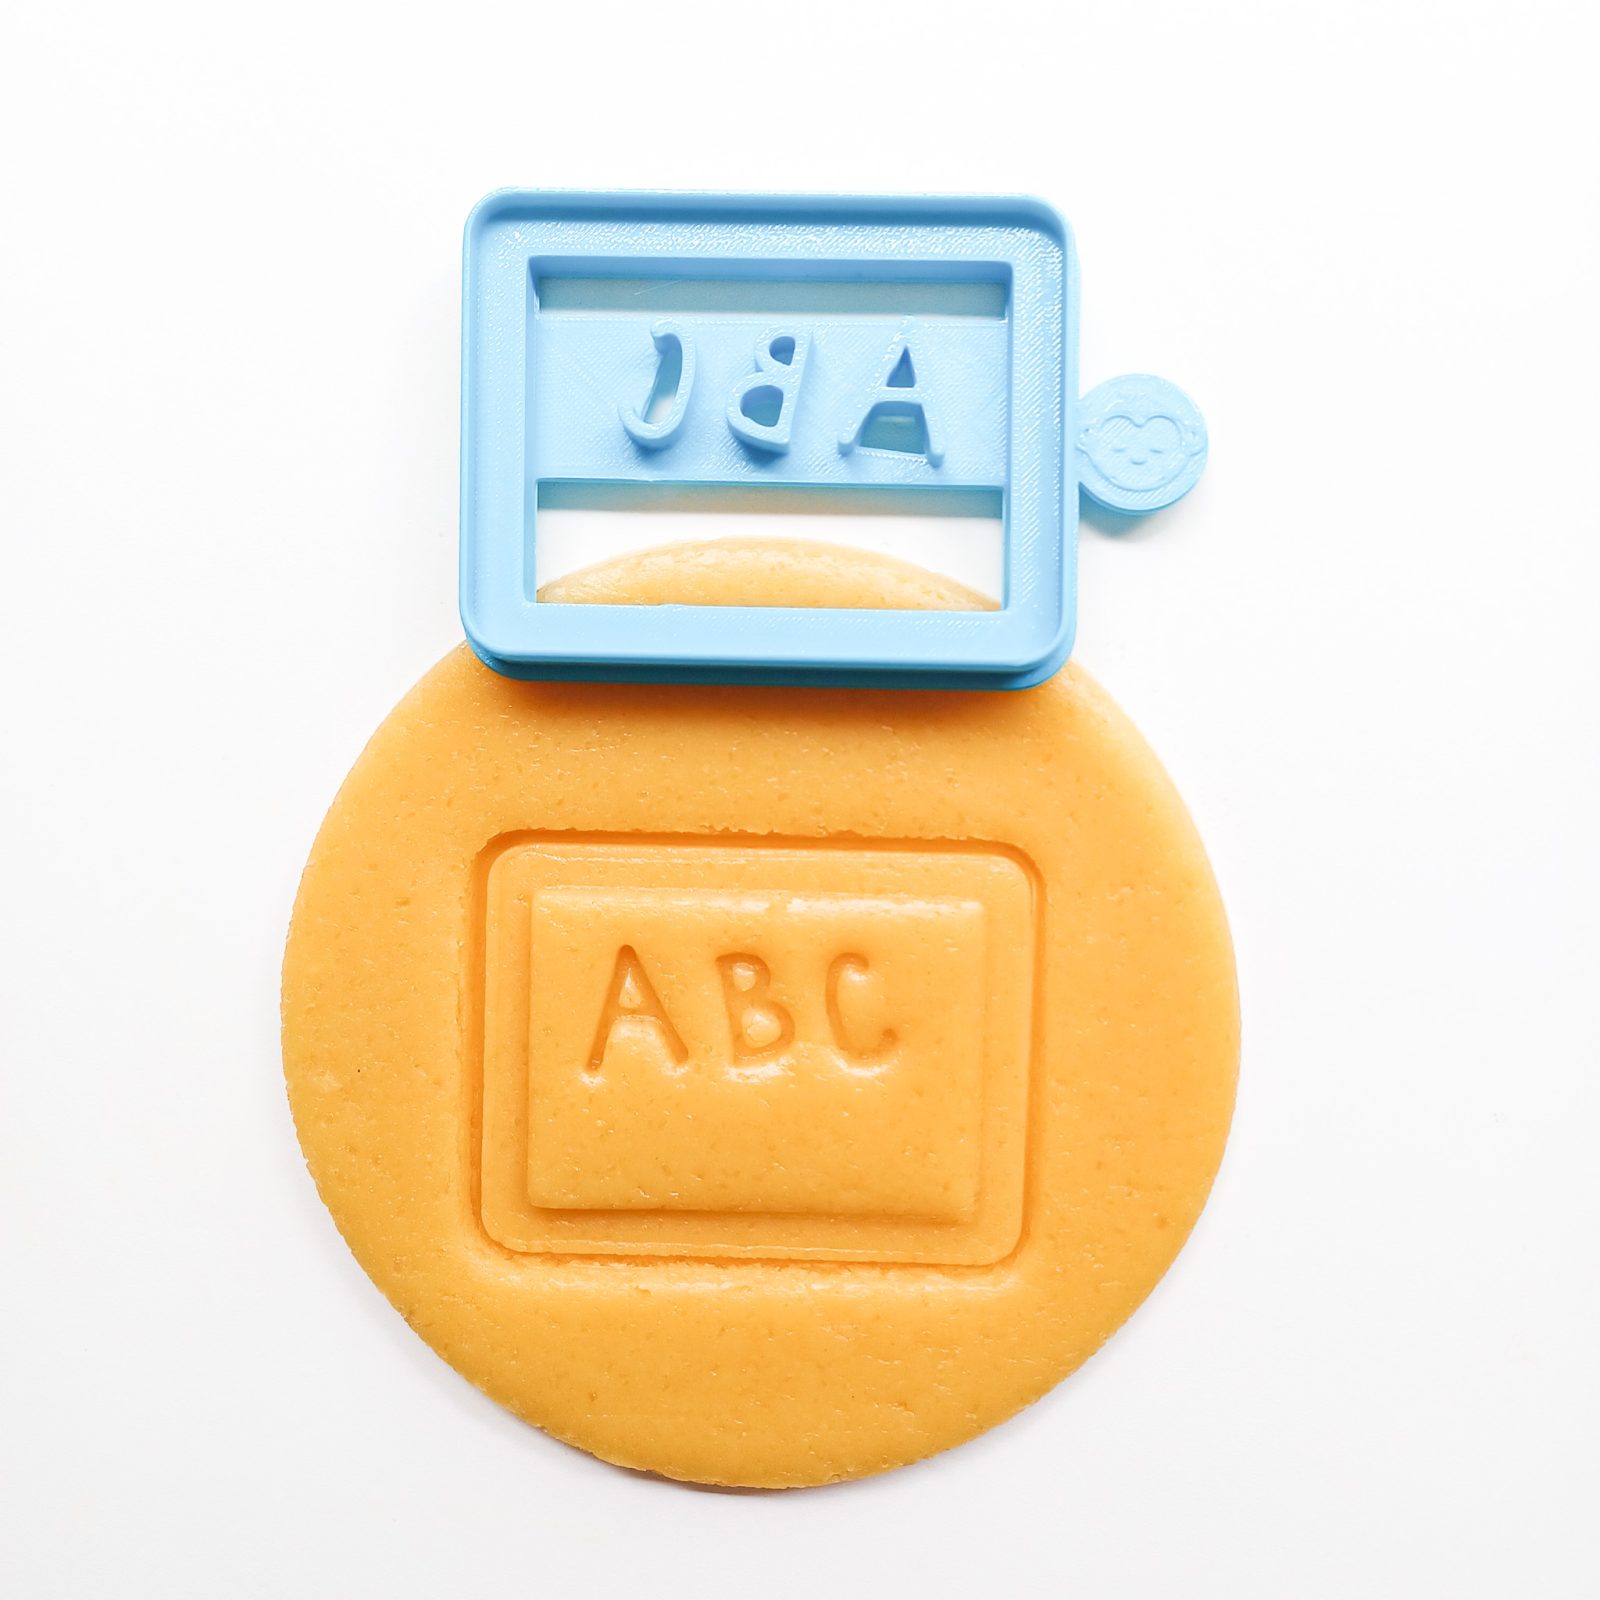 ABC-Board-Cookie-Cutter